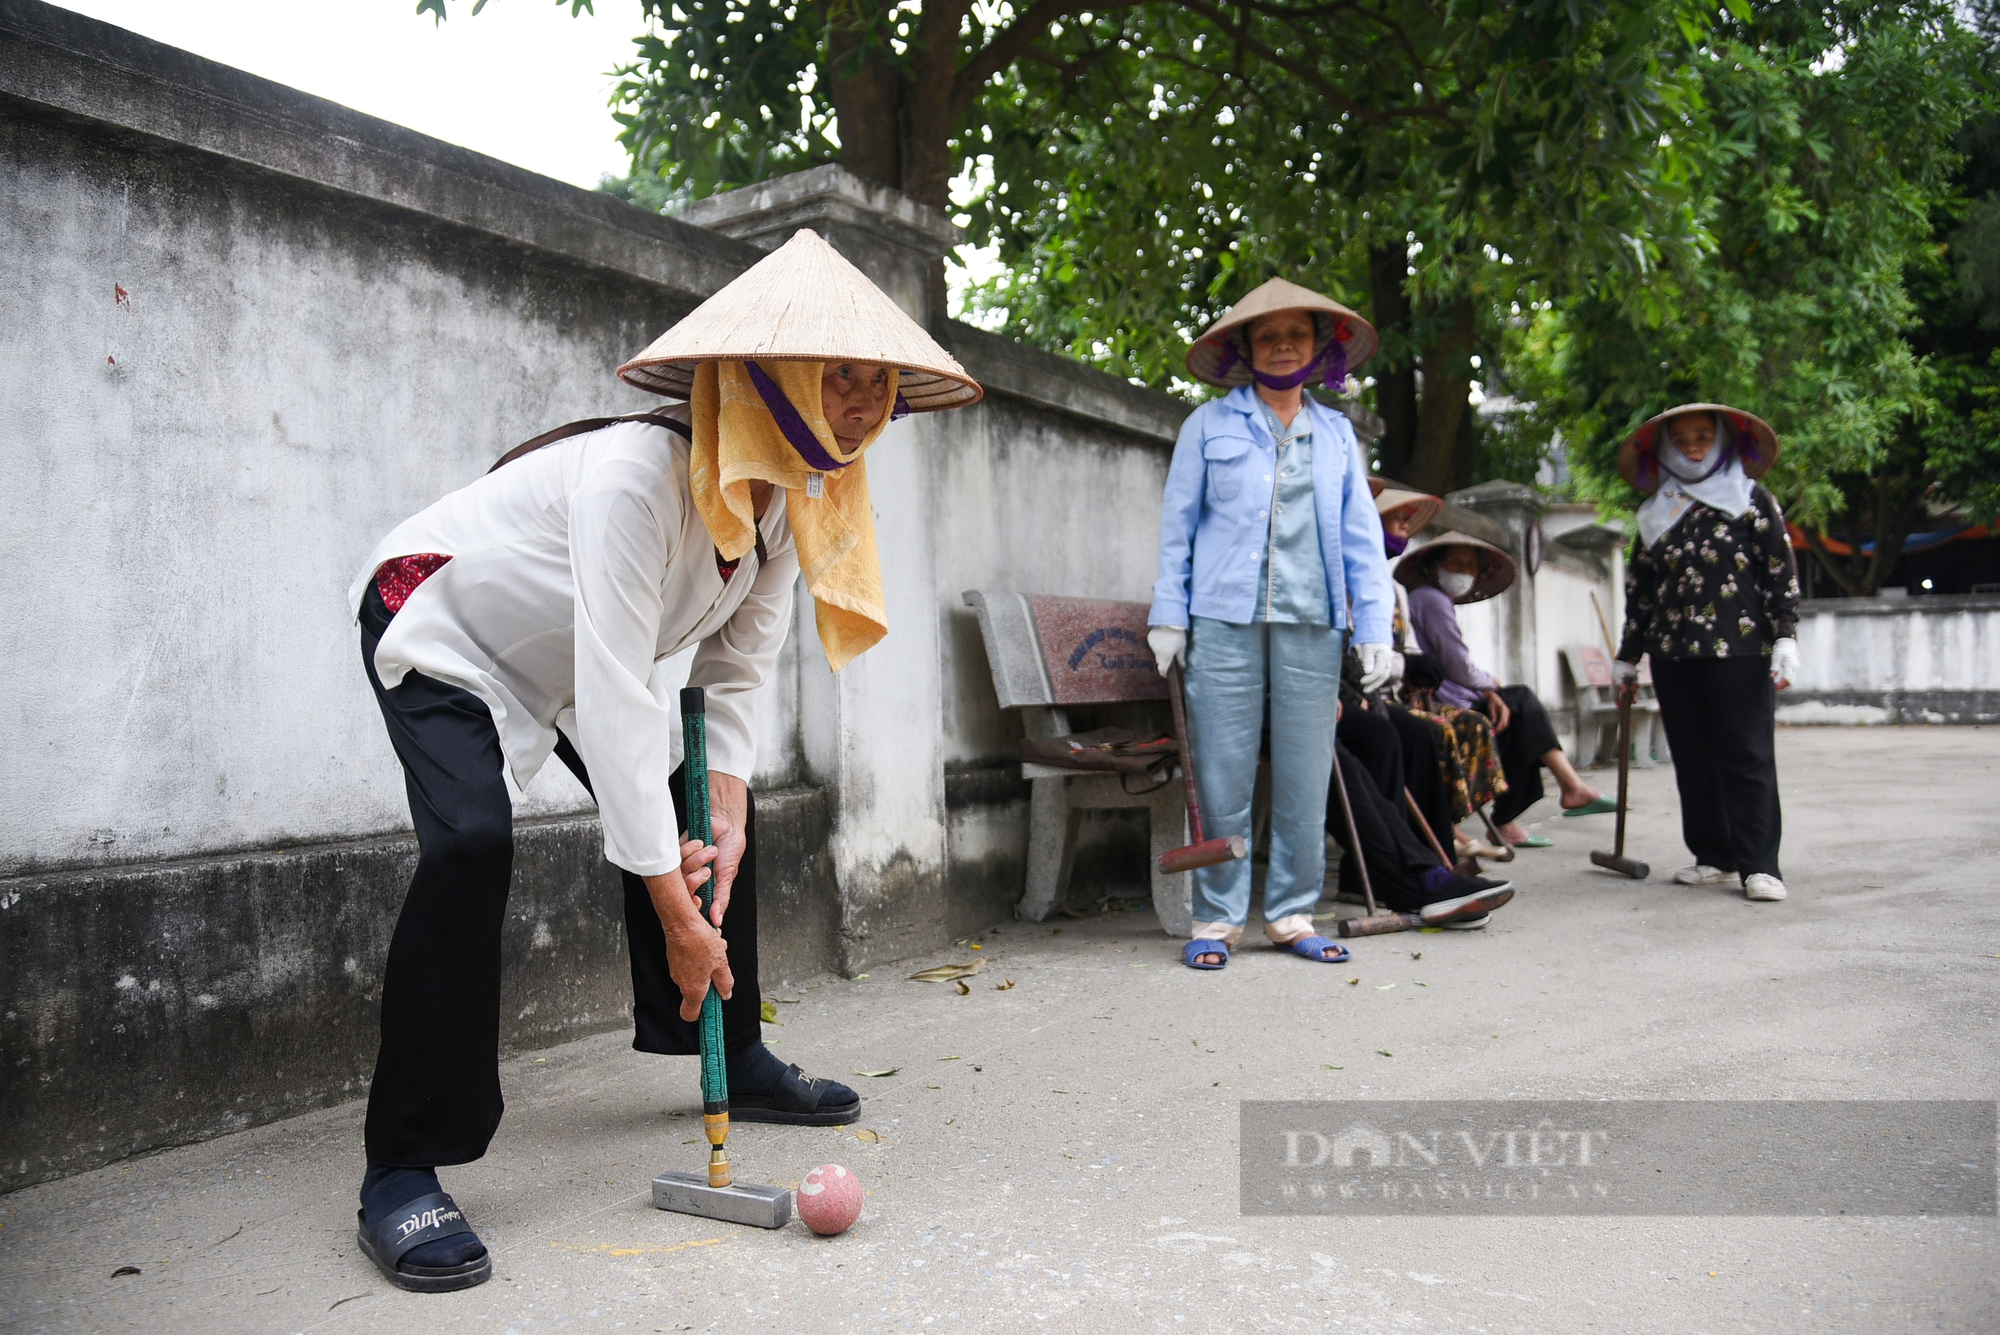 Người dân ngoại thành Hà Nội say mê vung gậy chơi môn thể thao quý tộc châu Âu - Ảnh 6.